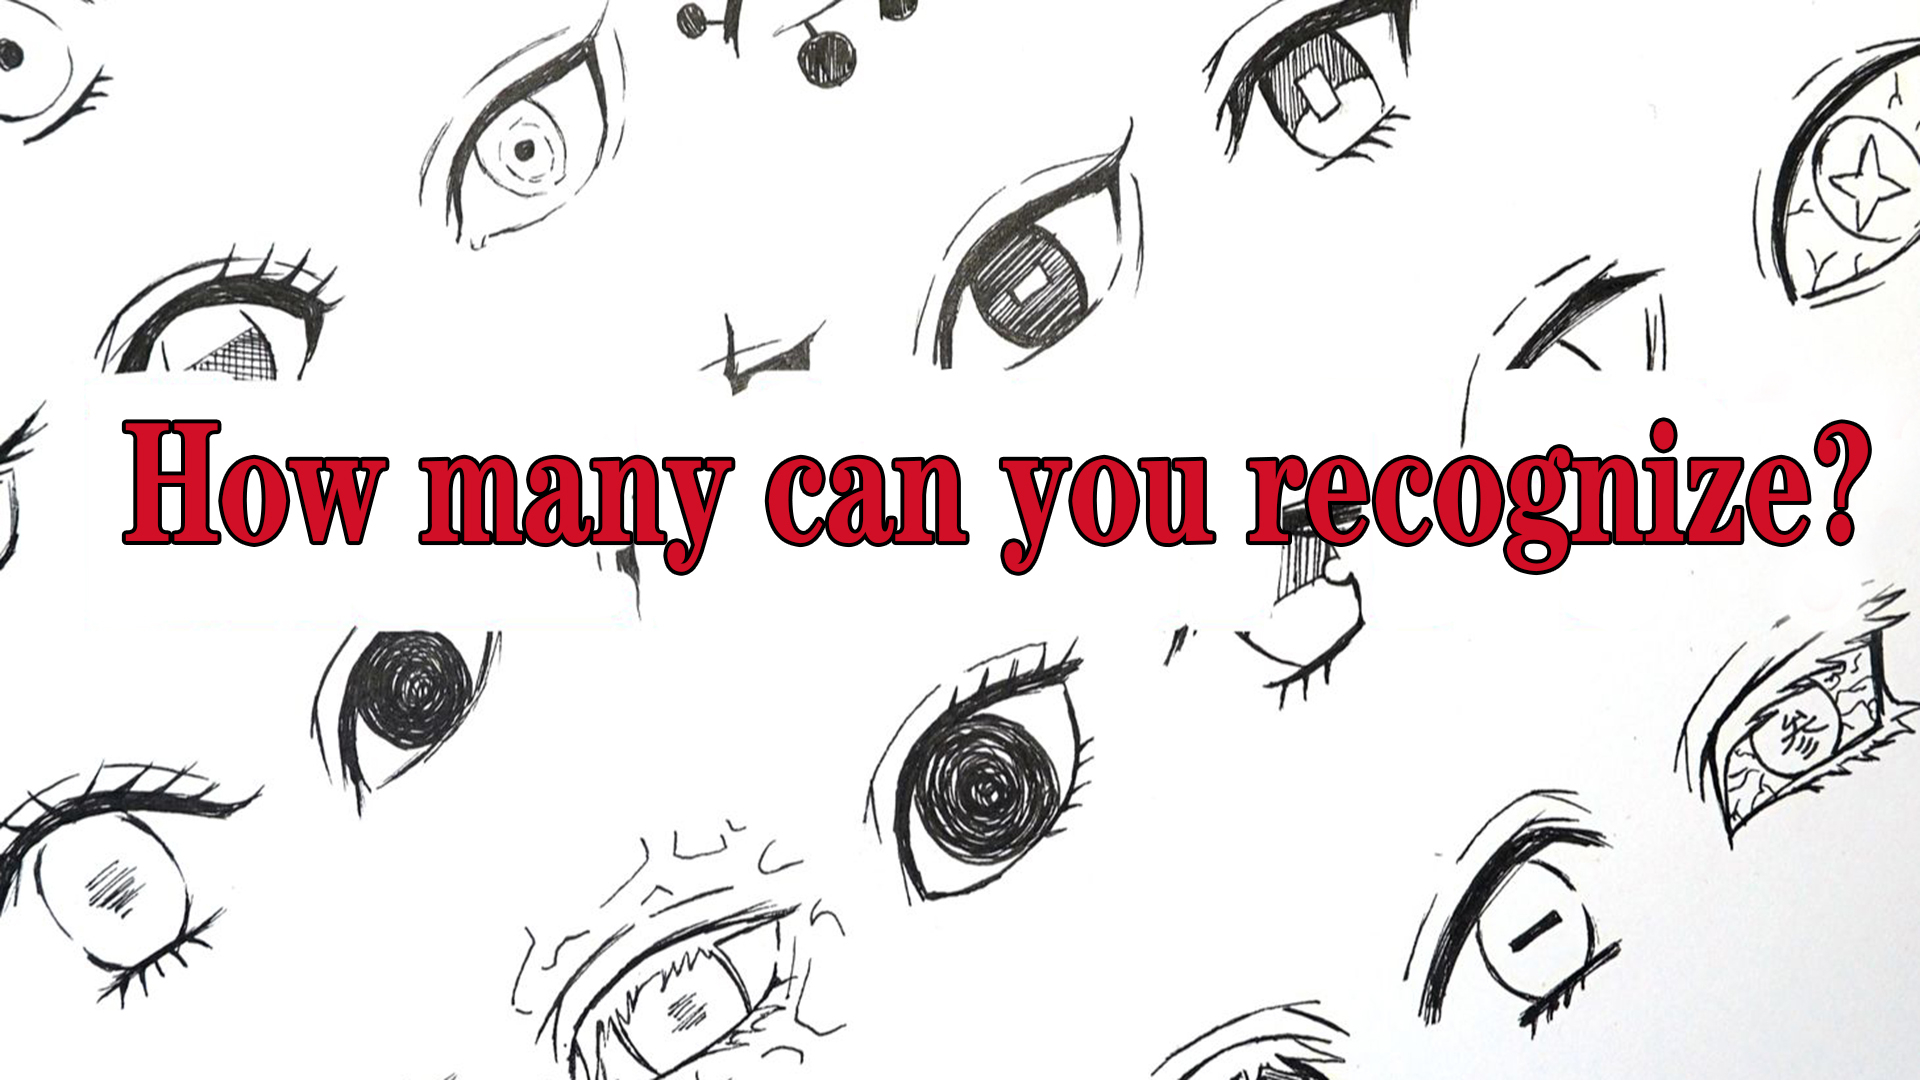 Bạn muốn học cách vẽ mắt anime cute để tạo nên những bức tranh tuyệt đẹp? Hãy tìm hiểu và thực hành theo cách vẽ mắt anime cute để tạo ra đôi mắt tuyệt vời nhất.